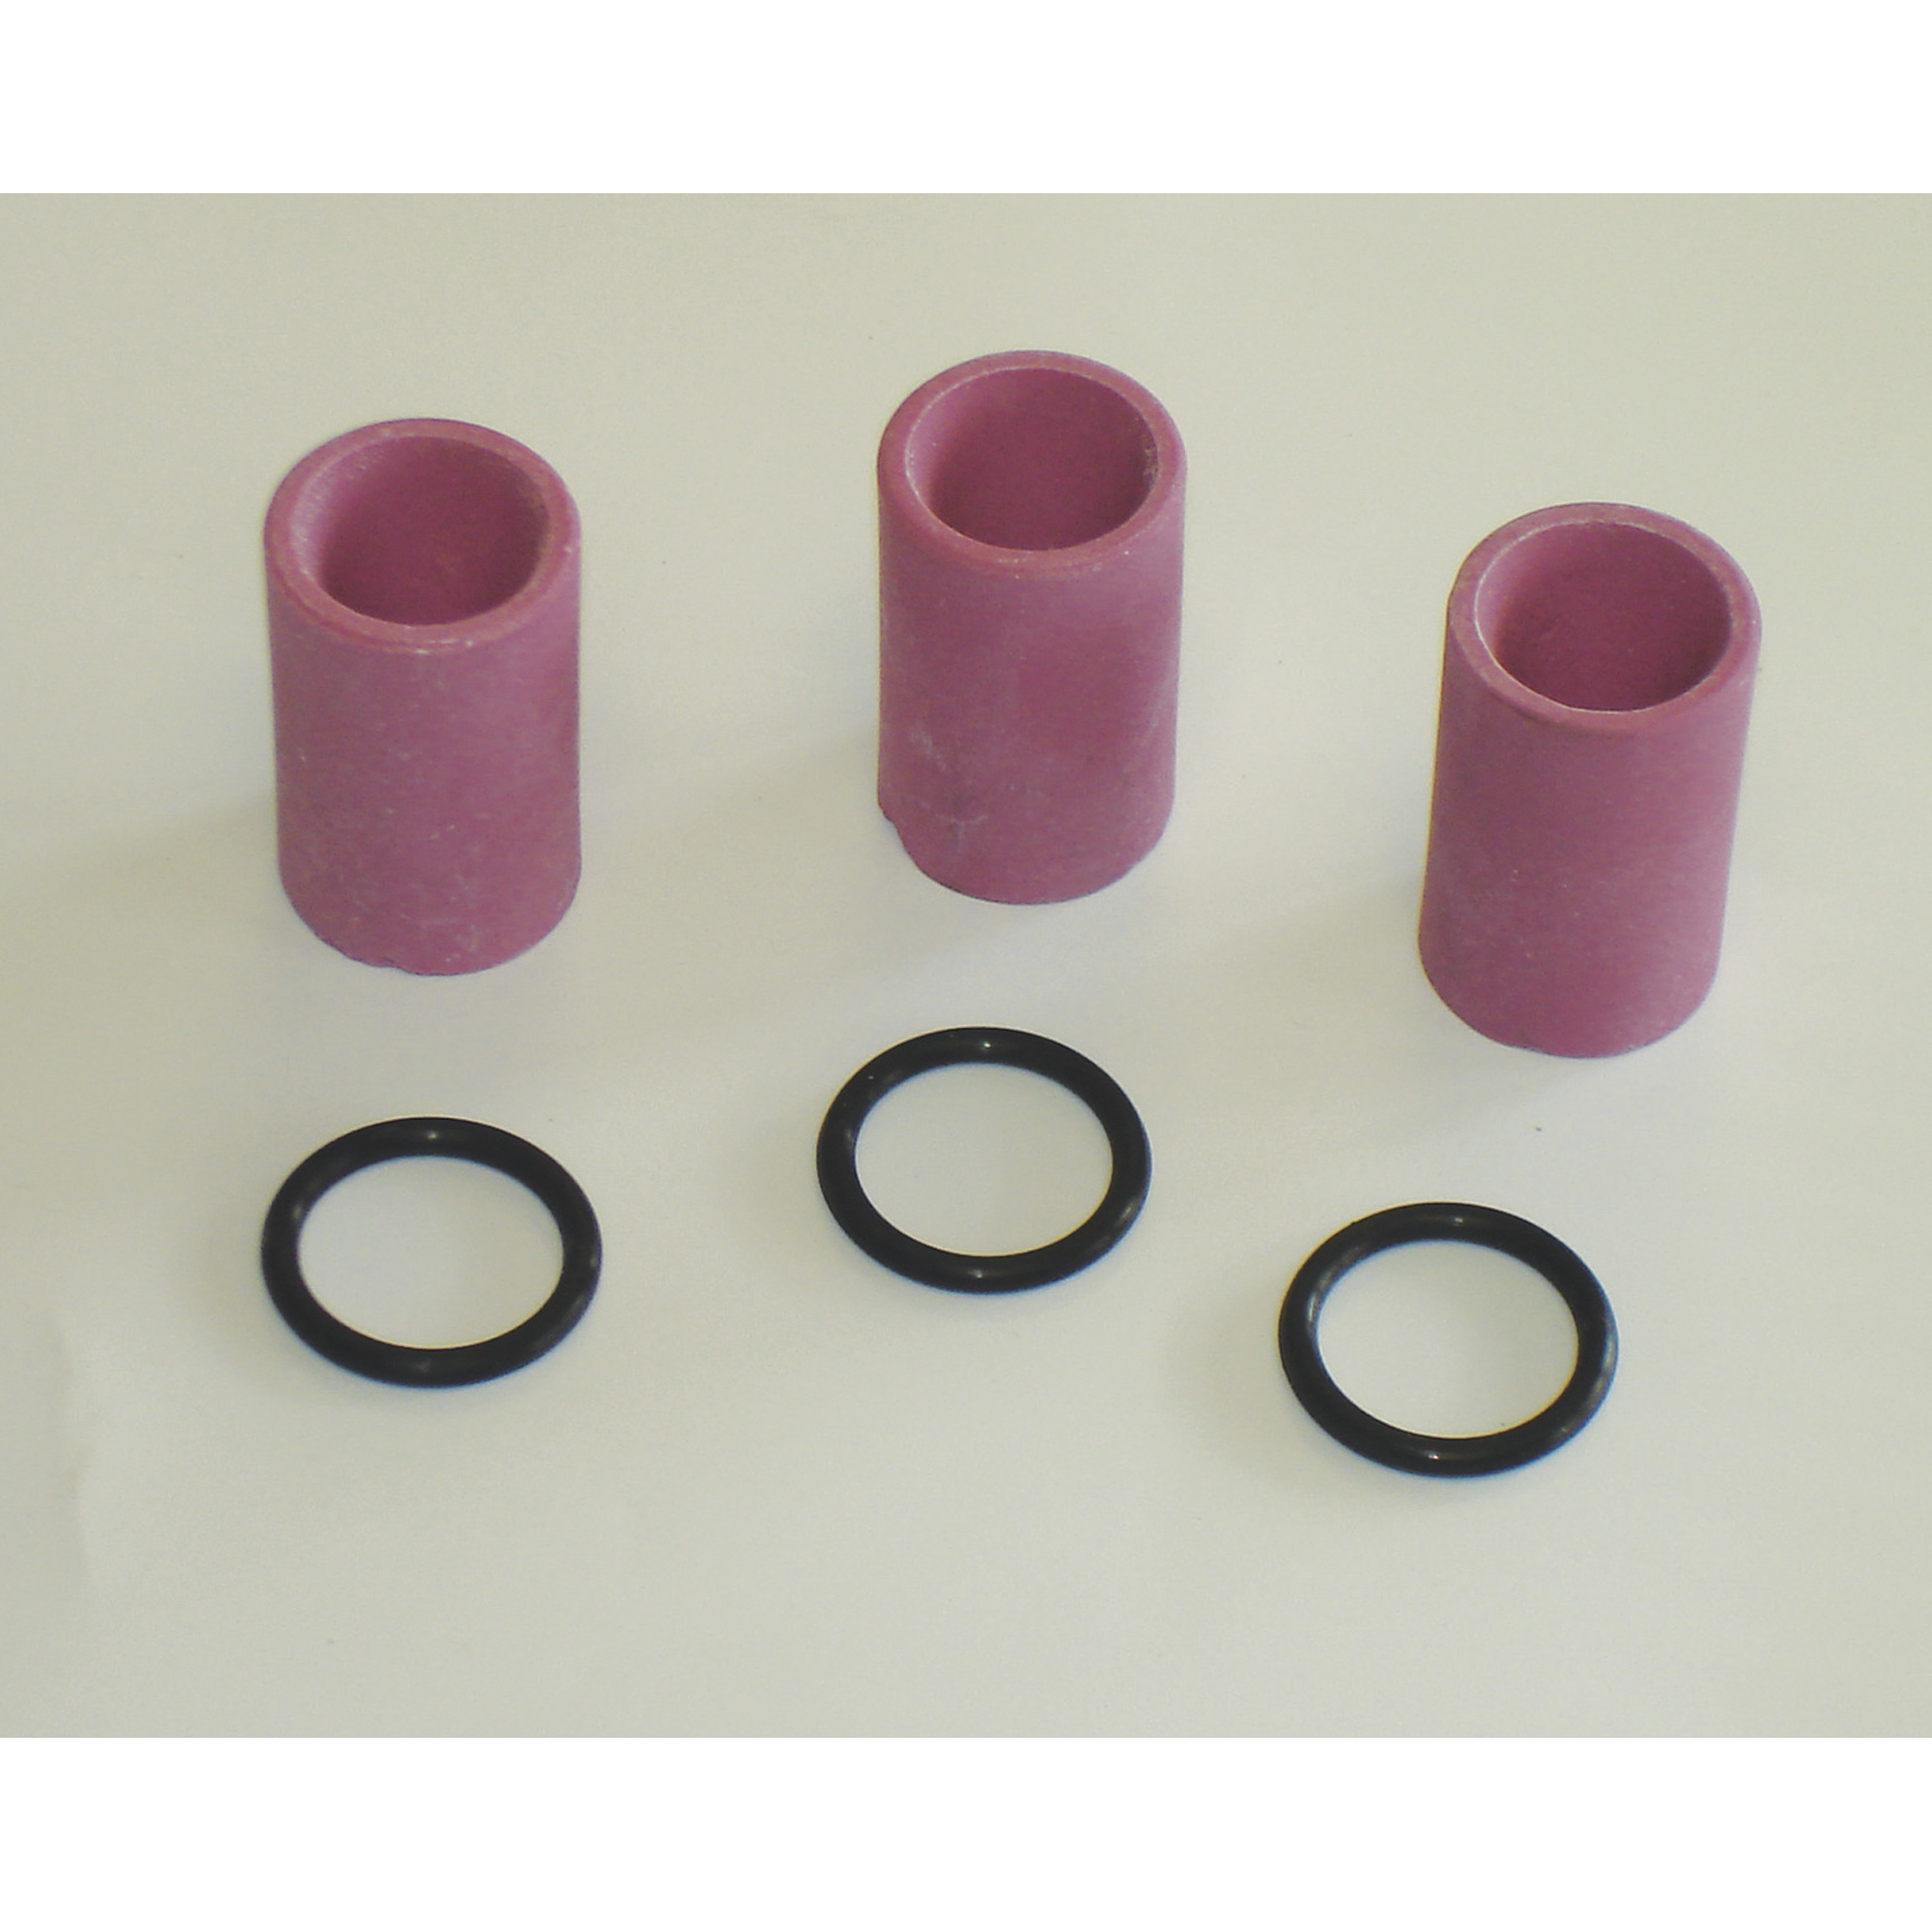 AllSource Abrasive Blaster Ceramic Nozzle Kit â 6mm, Model 41911